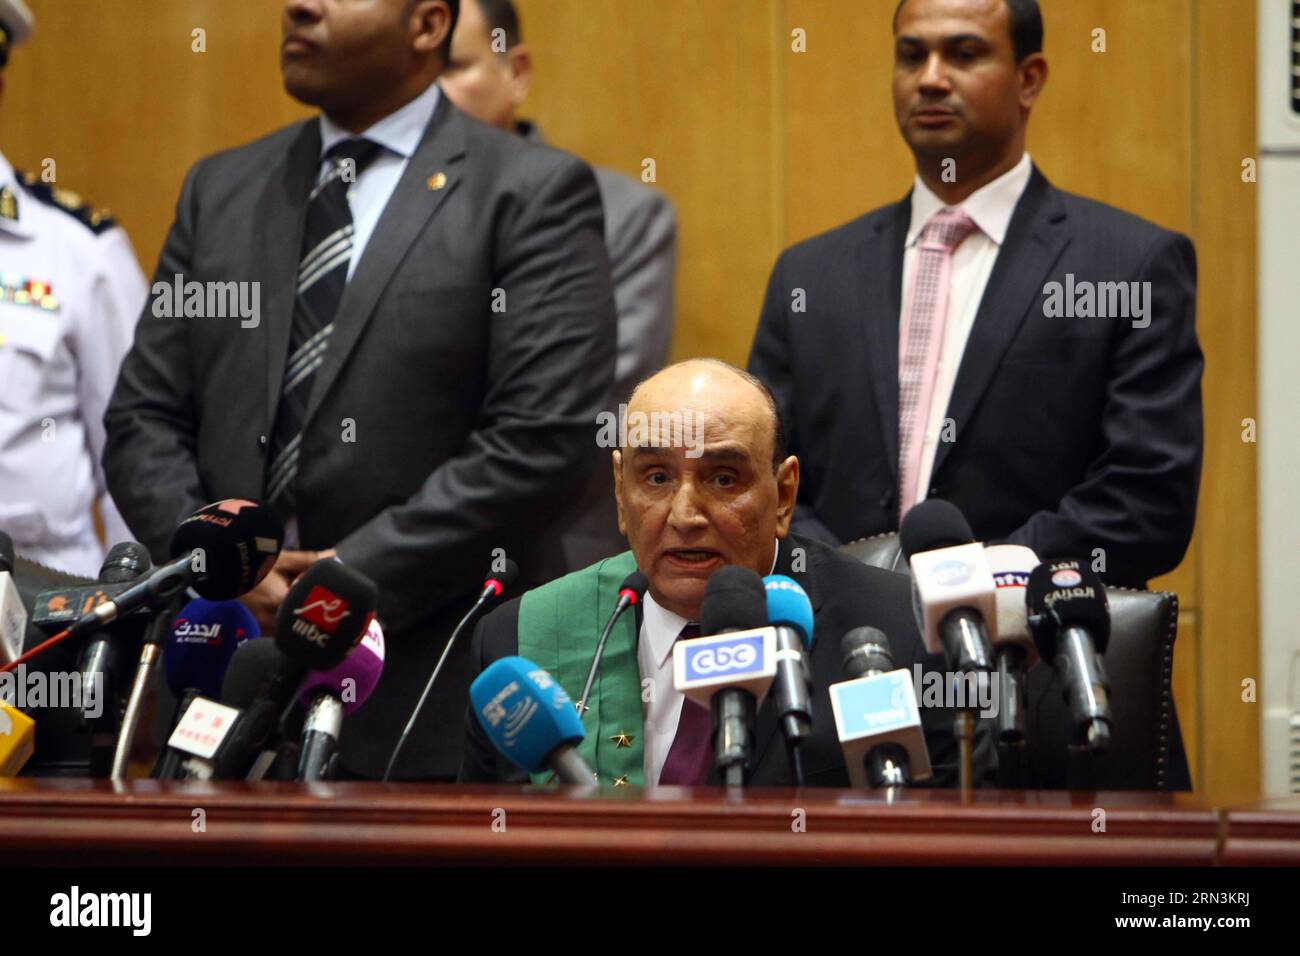 (150421) -- LE CAIRE, 21 avril 2015 -- le juge Ahmed Sabry s'adresse aux médias lors du procès du président égyptien déchu Mohamed Morsi au Caire, en Égypte, le 21 avril 2015. Un tribunal égyptien a condamné mardi l'ancien président islamiste Mohammed Morsi à 20 ans de prison pour le meurtre de manifestants en 2012. ÉGYPTE-LE CAIRE-POLITICS-TRIAL-MORSI AhmedxGomaa PUBLICATIONxNOTxINxCHN le Caire avril 21 2015 le juge Ahmed s'adresse aux médias lors du procès du président égyptien déchu Mohamed Morsi au Caire Égypte LE 21 2015 avril devant la Cour égyptienne a condamné mardi l'ancien président islamiste Mohammed Mors Banque D'Images